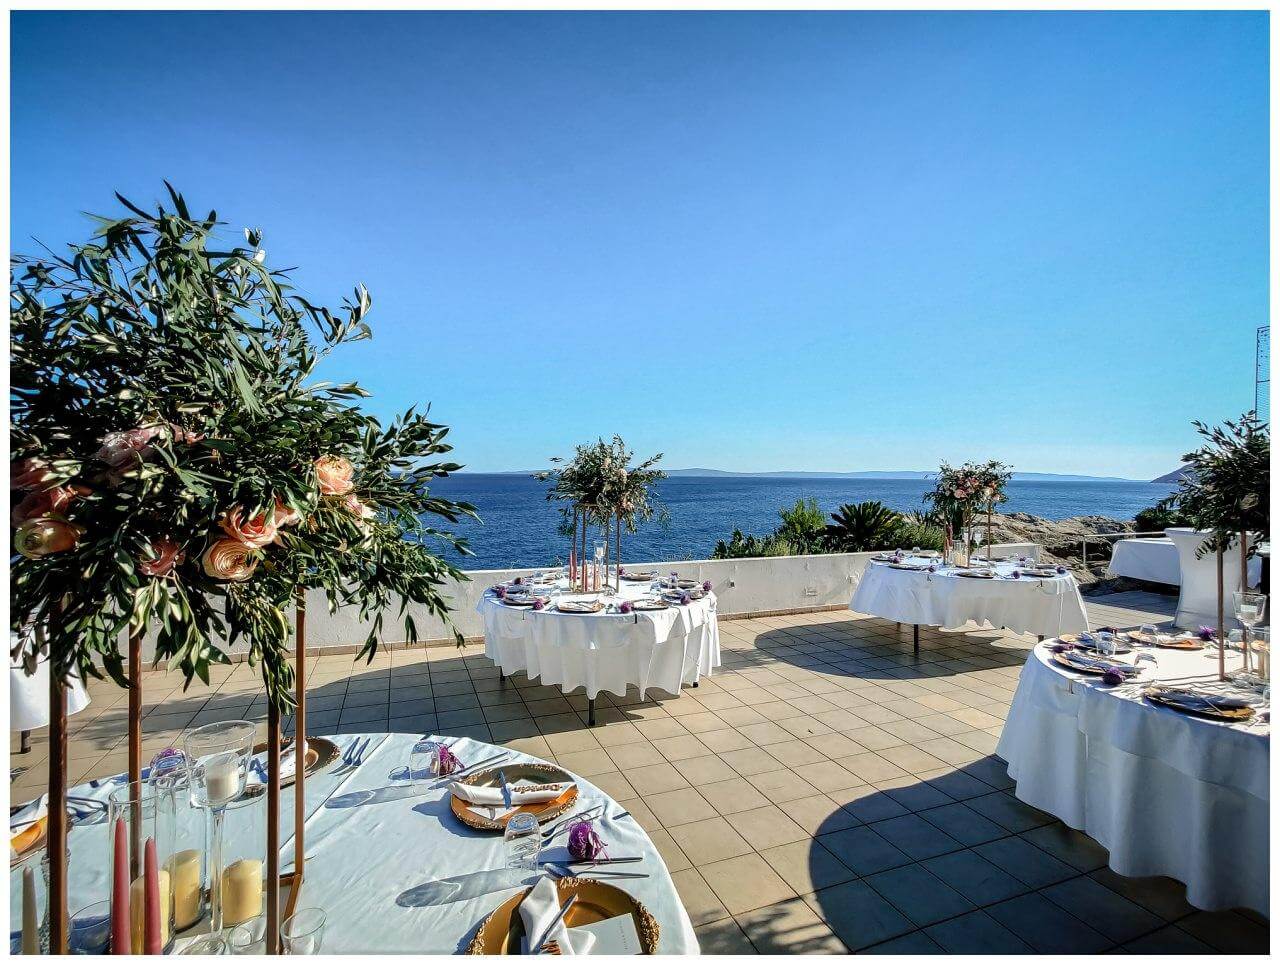 Hochzeitslocation in Kroatien am Meer